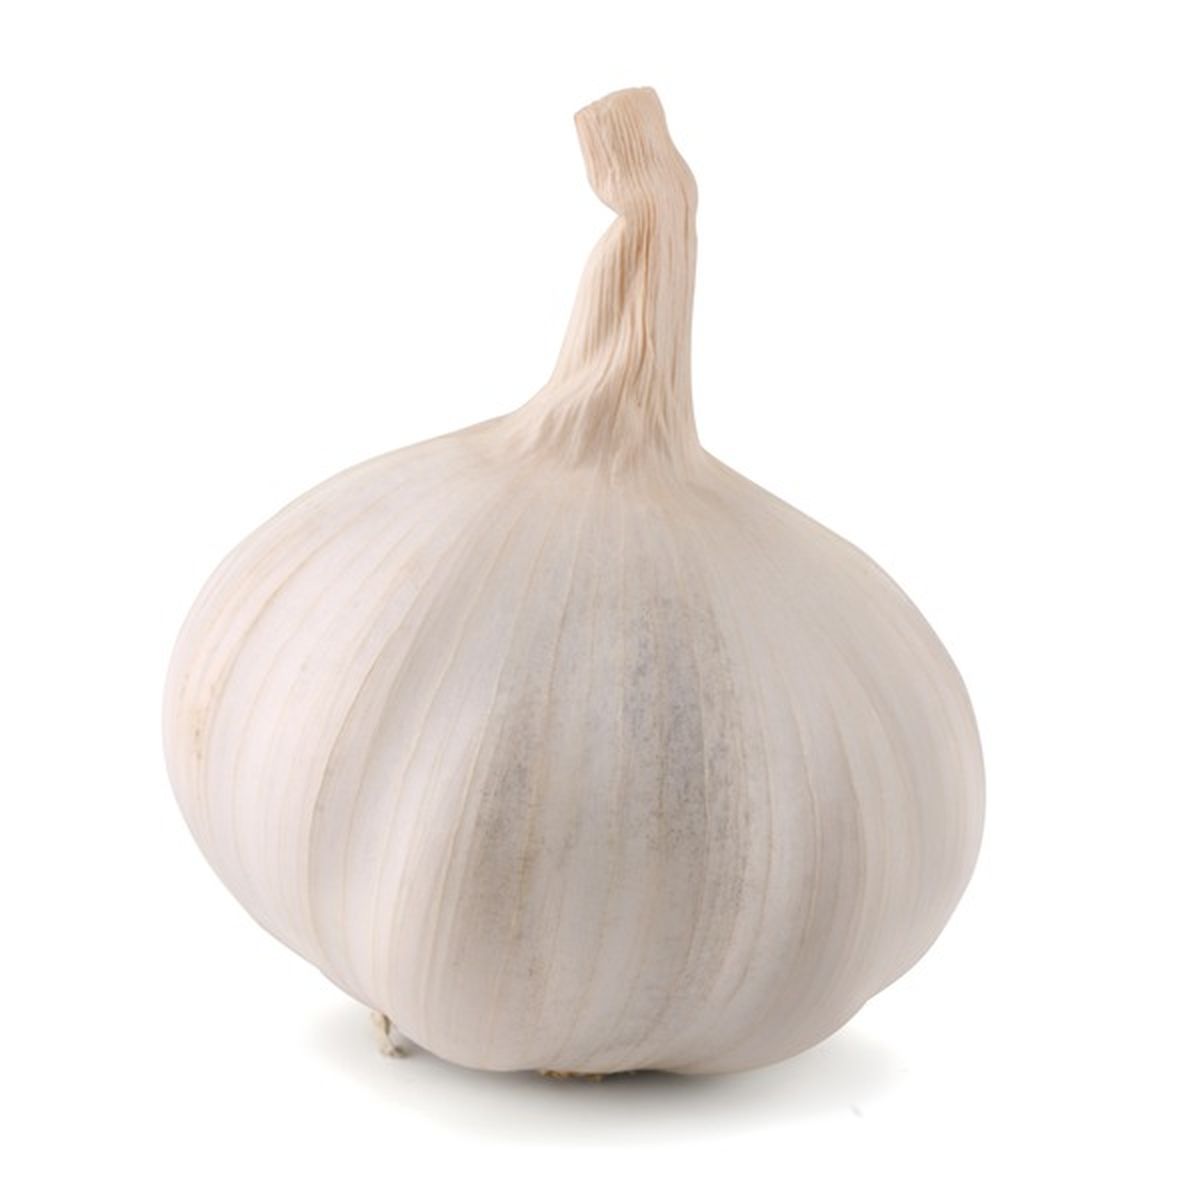 Garlic Herb Rub